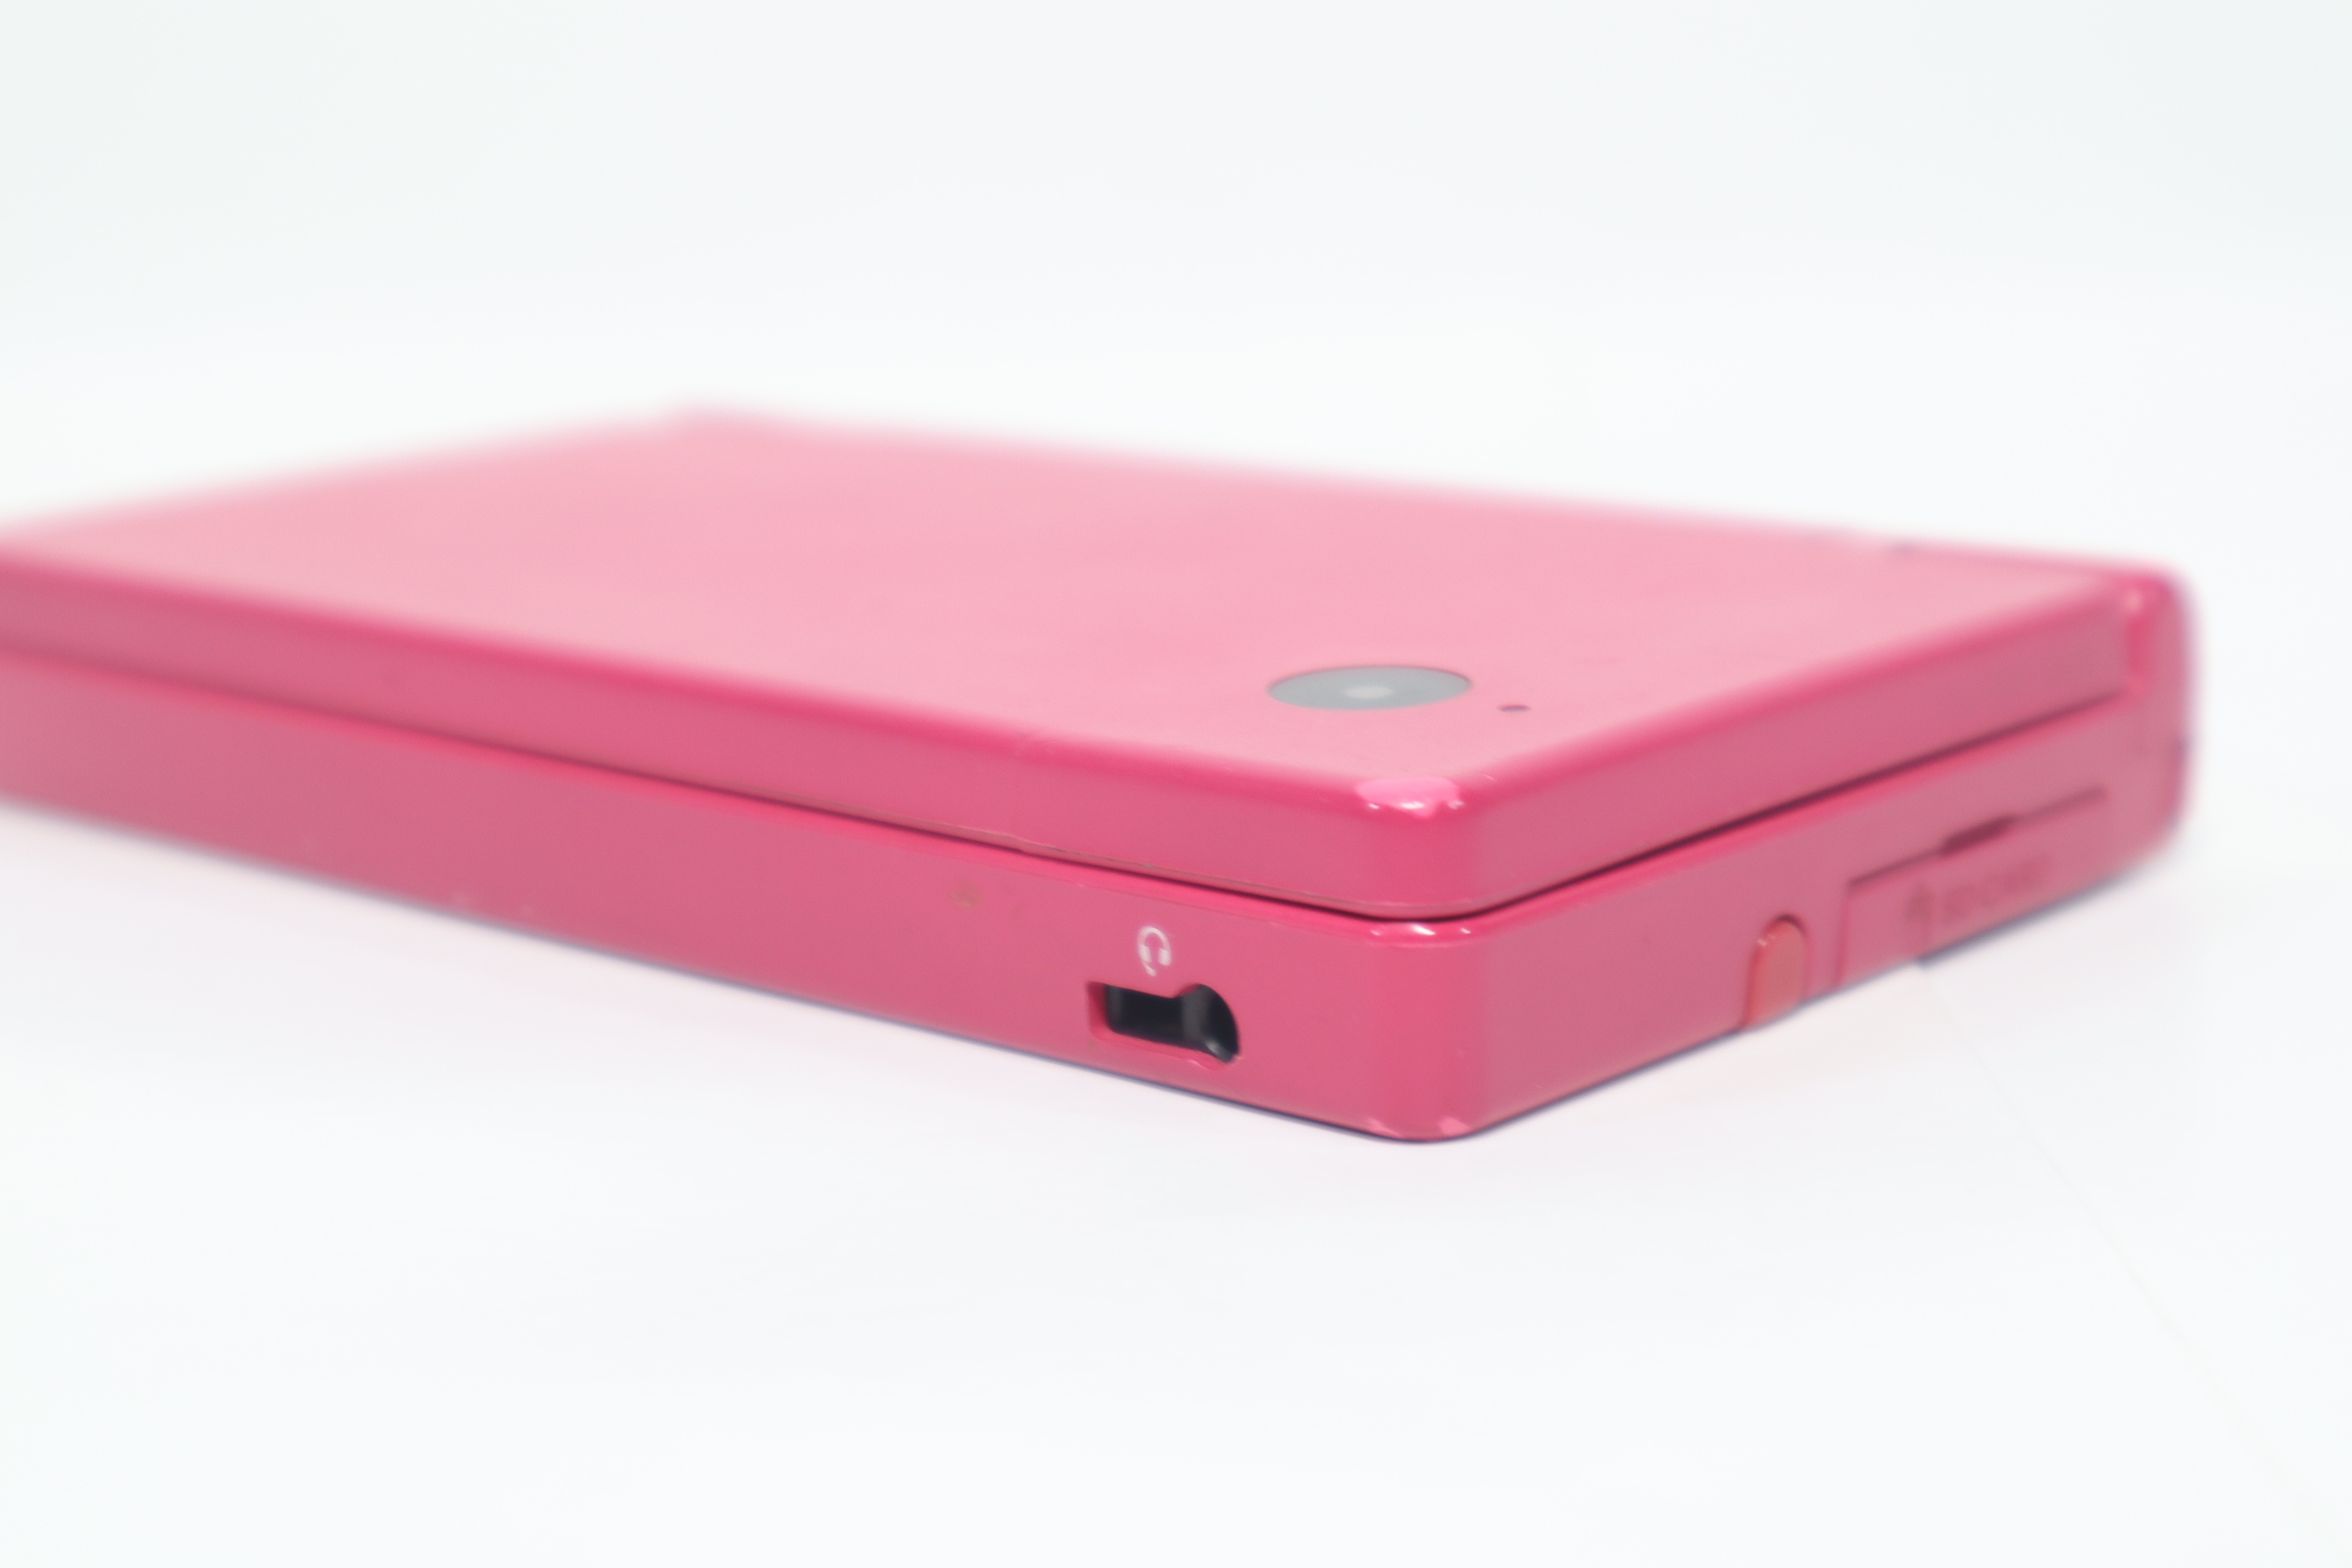 Pink Nintendo DSi System (Nintendo DS) – J2Games